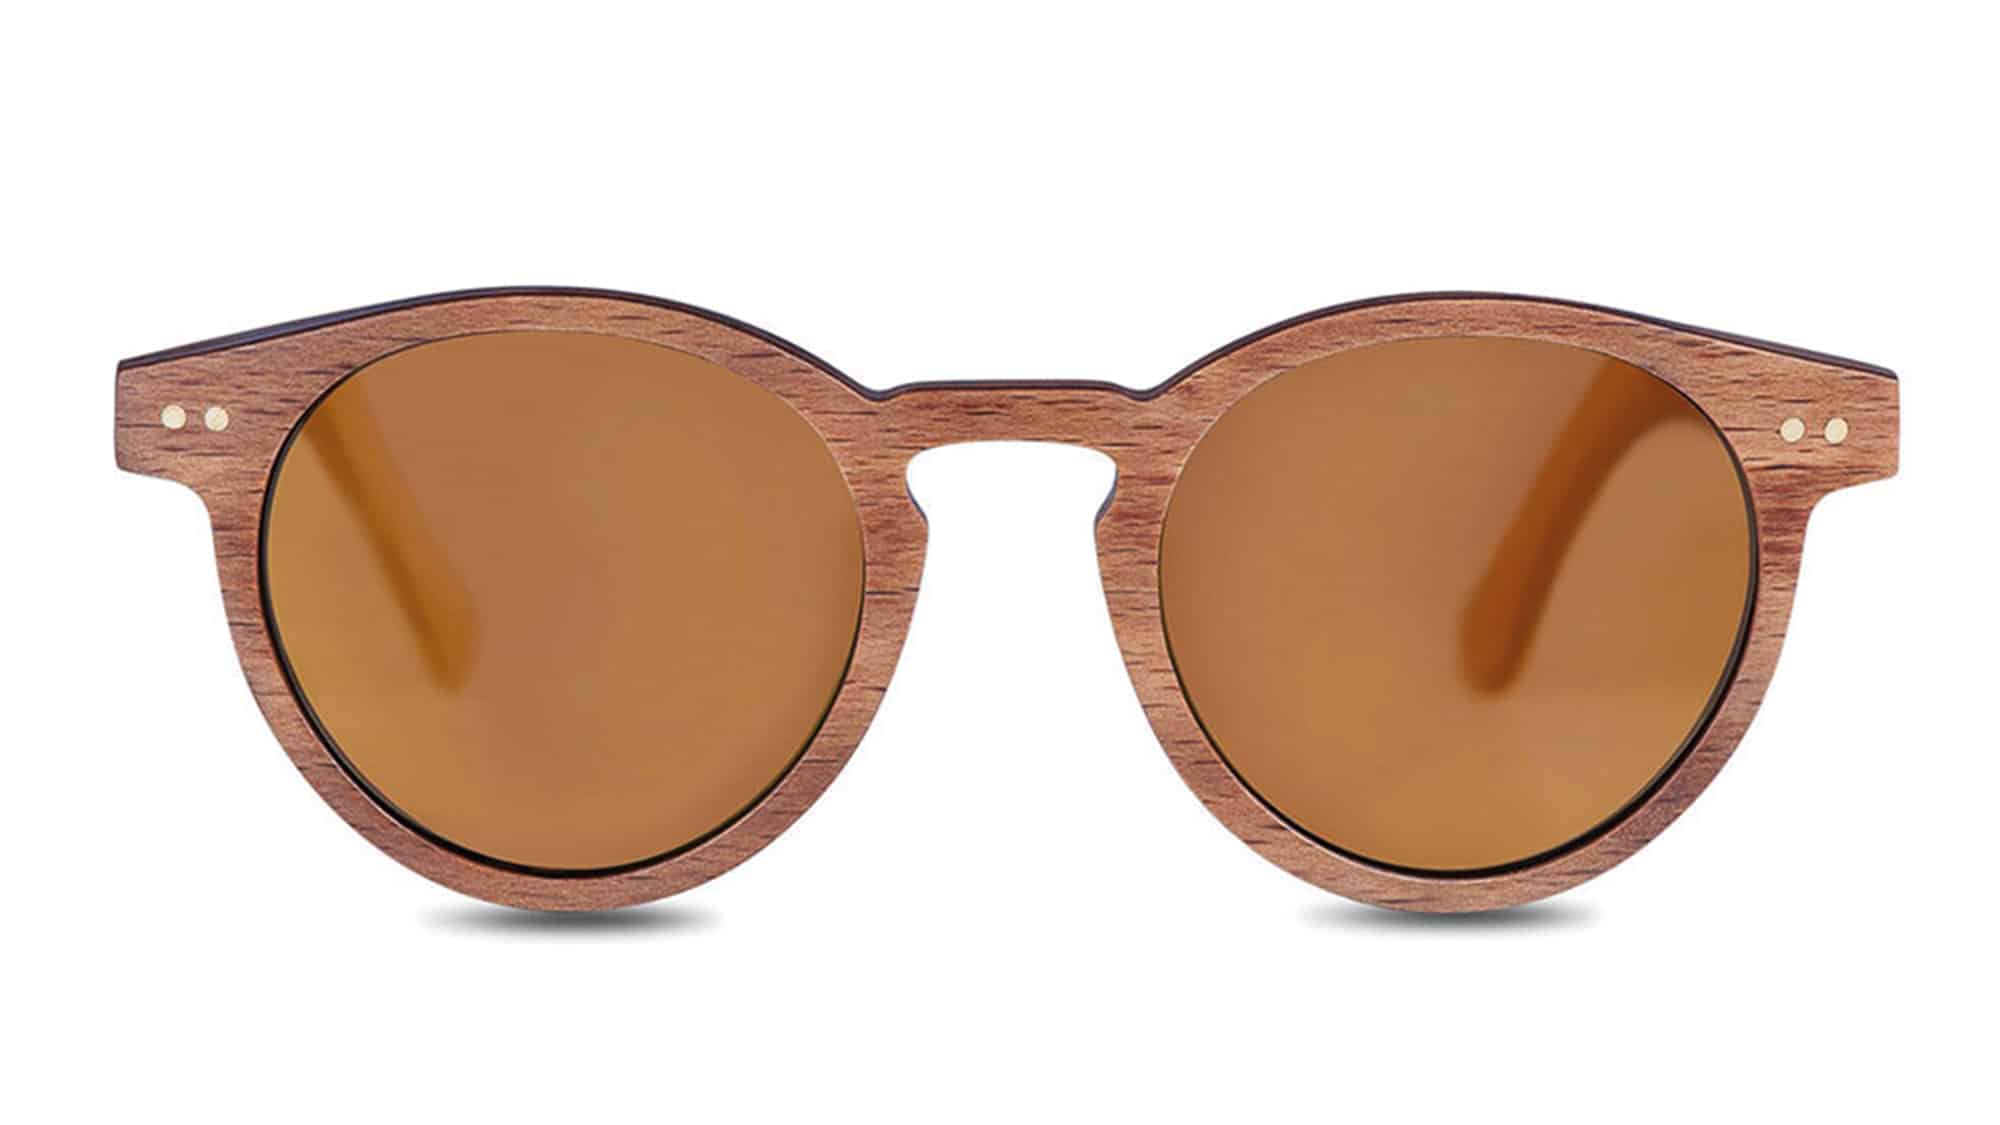 Jabrock sunglasses